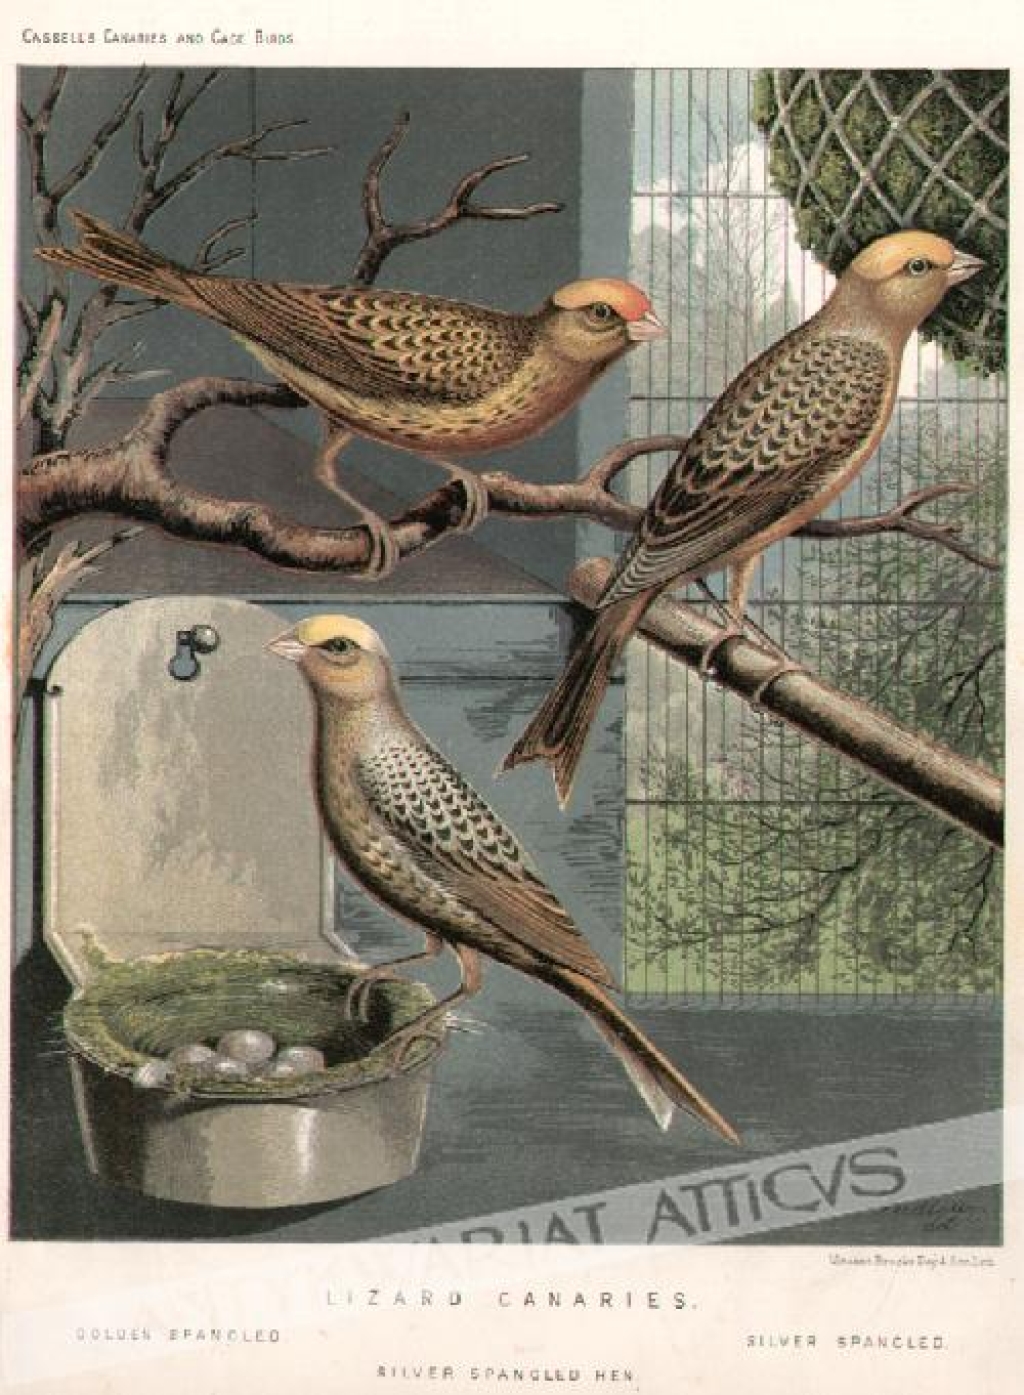 [rycina, ok. 1880] Lizard Canaries [kanarki]